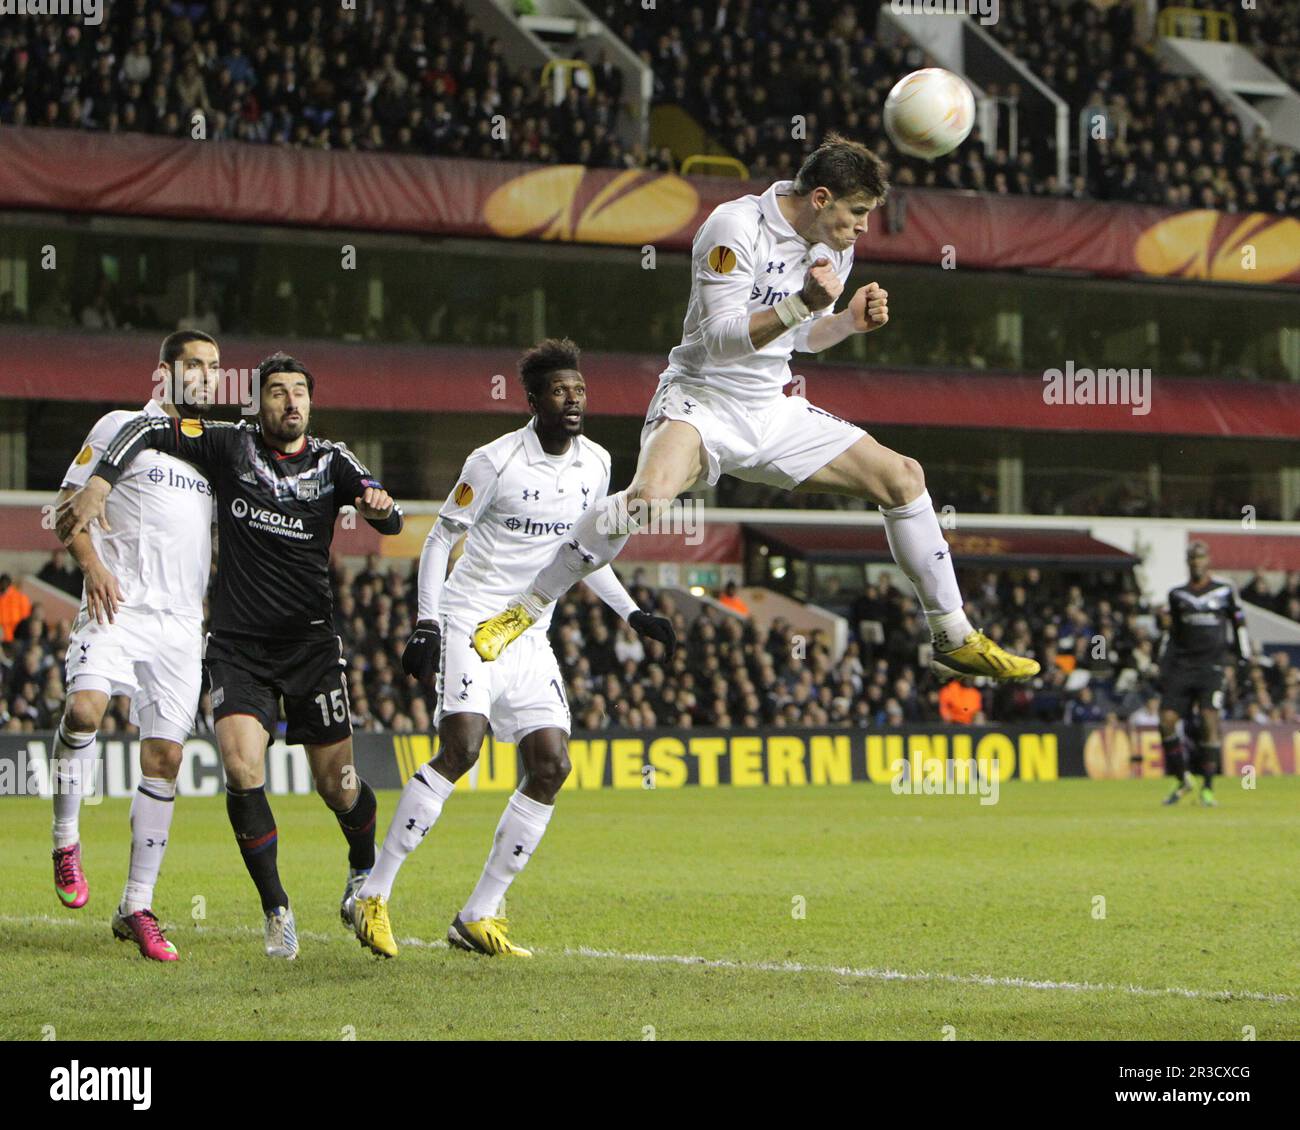 Tottenham Hotspur's Gareth Bale schafft den Ball nach einem Lyon Corner-Kick in Sicherheit. Sporen schlagen Lyon 2:1Tottenham Hotspur 14/02/13 Tottenham Hotspur Stockfoto